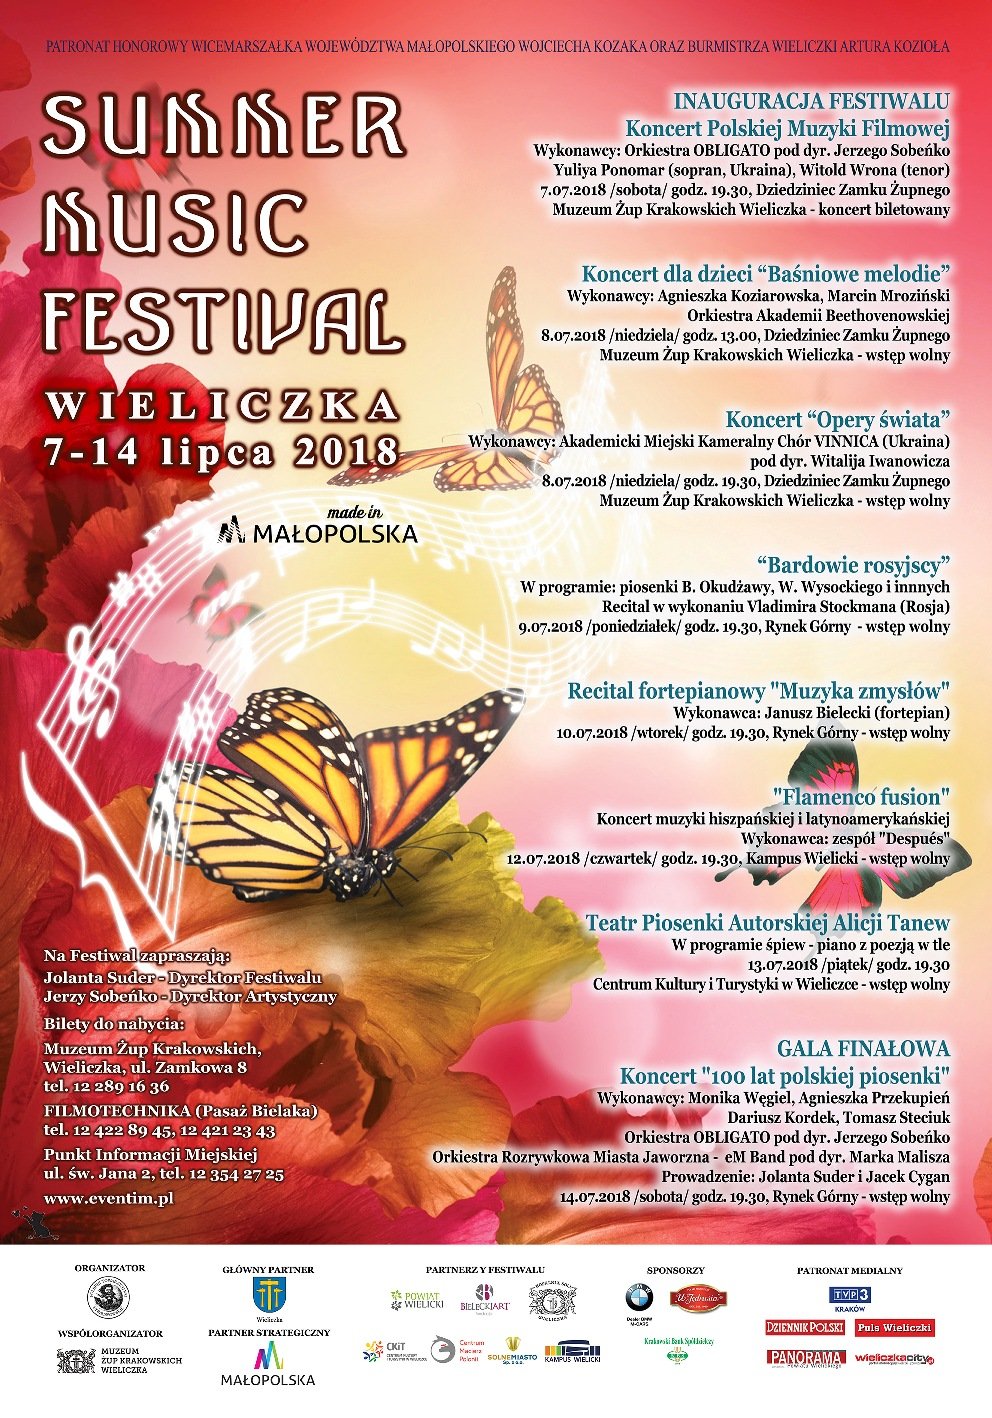 Summer Music Festival Wieliczka 2018